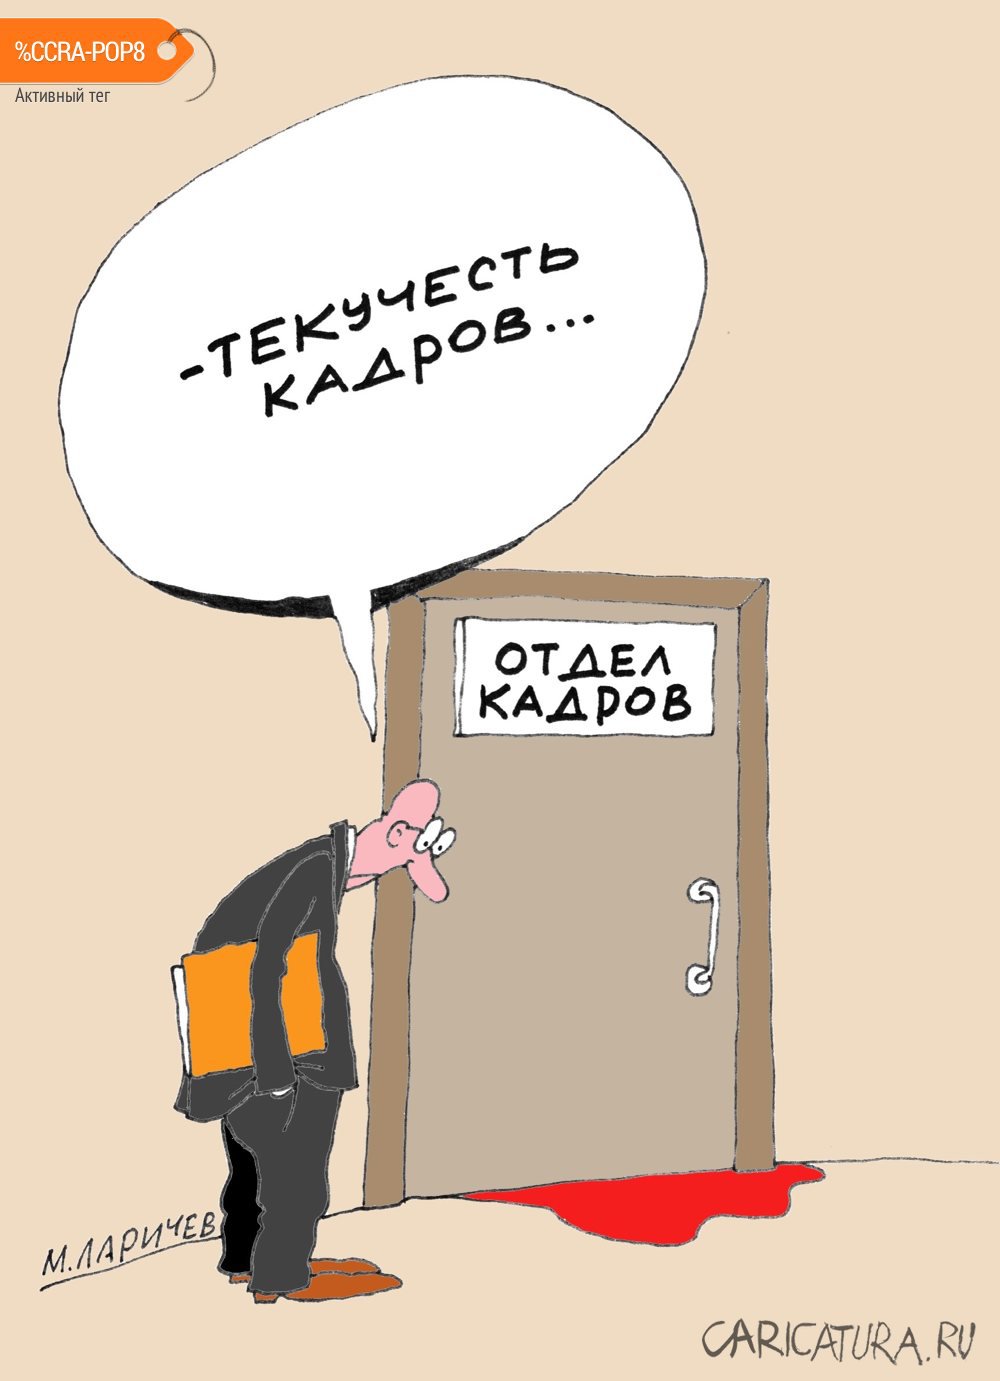 Карикатура "Кадр", Михаил Ларичев